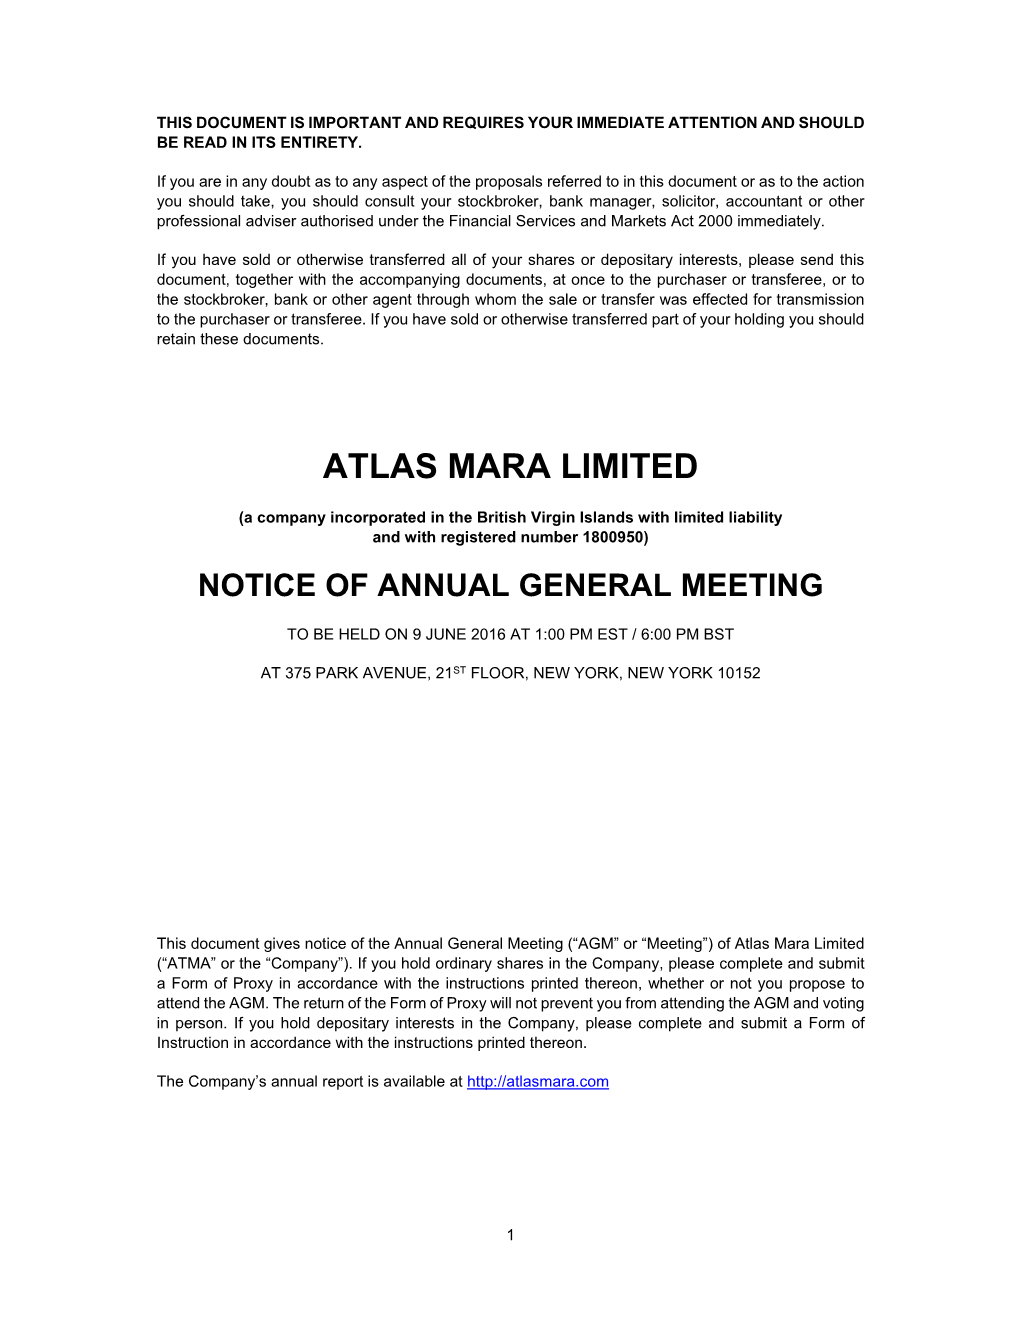 Atlas Mara Limited